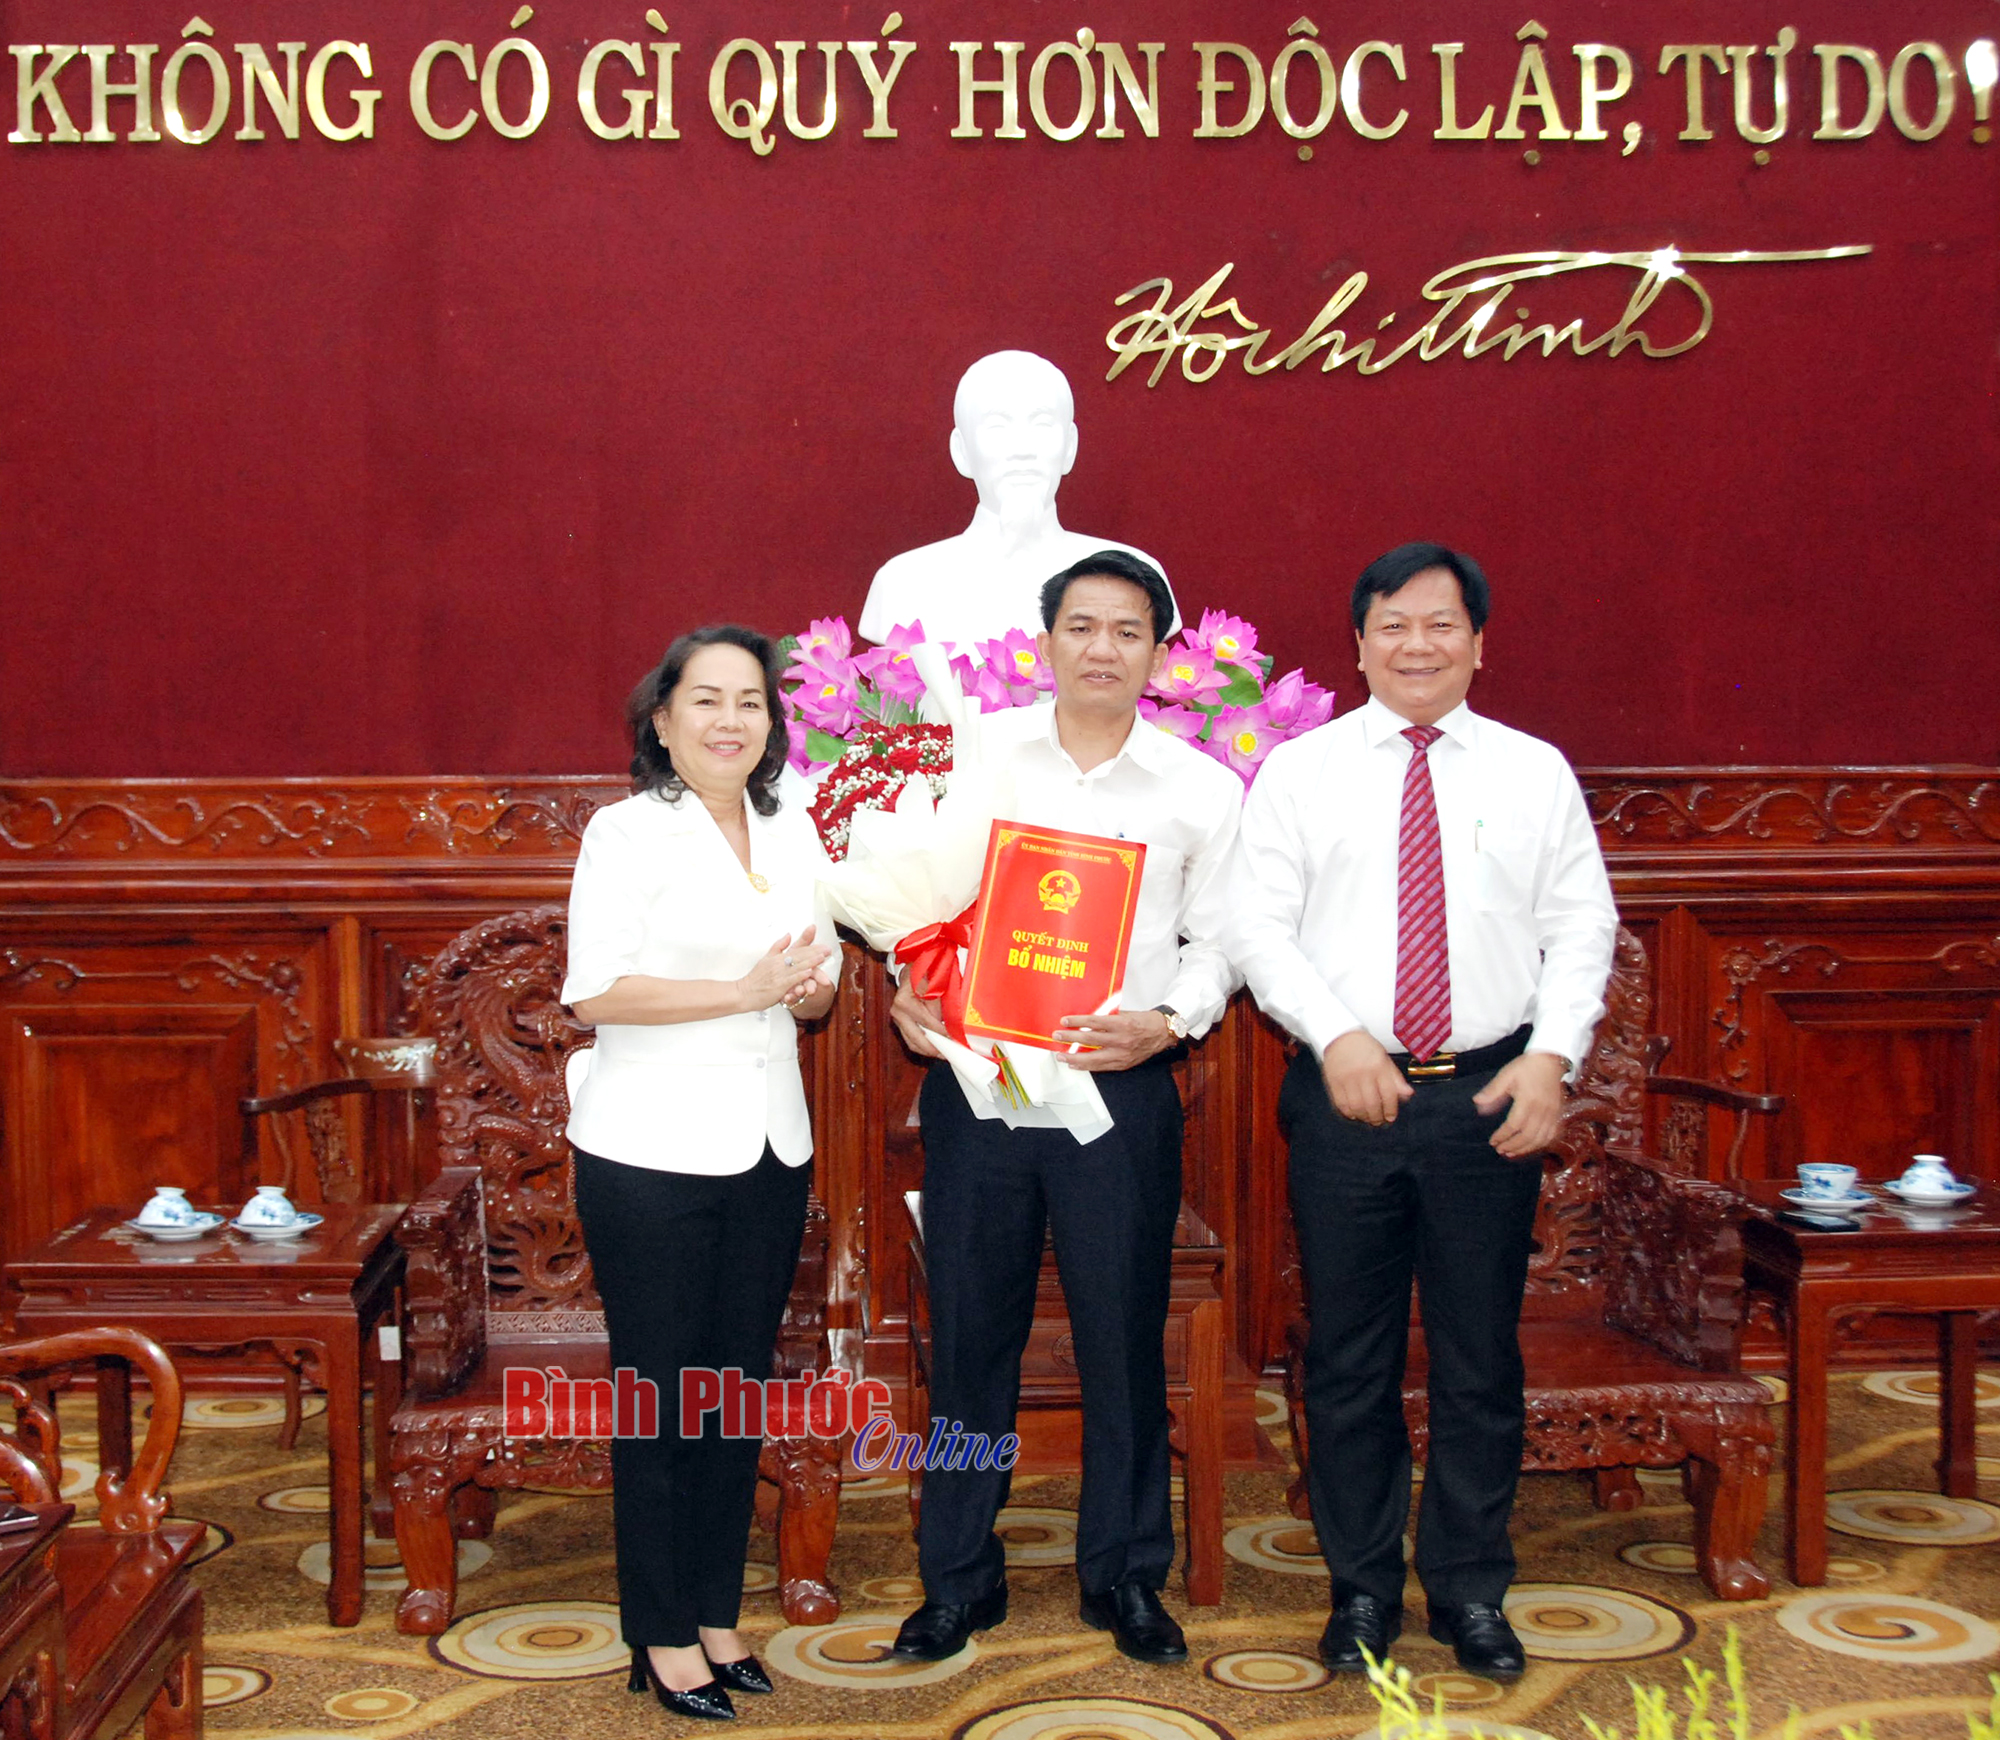 Bình Phước: Ông Mai Xuân Tuân được bổ nhiệm giữ chức Phó giám đốc Sở Lao động - Thương binh và Xã hội